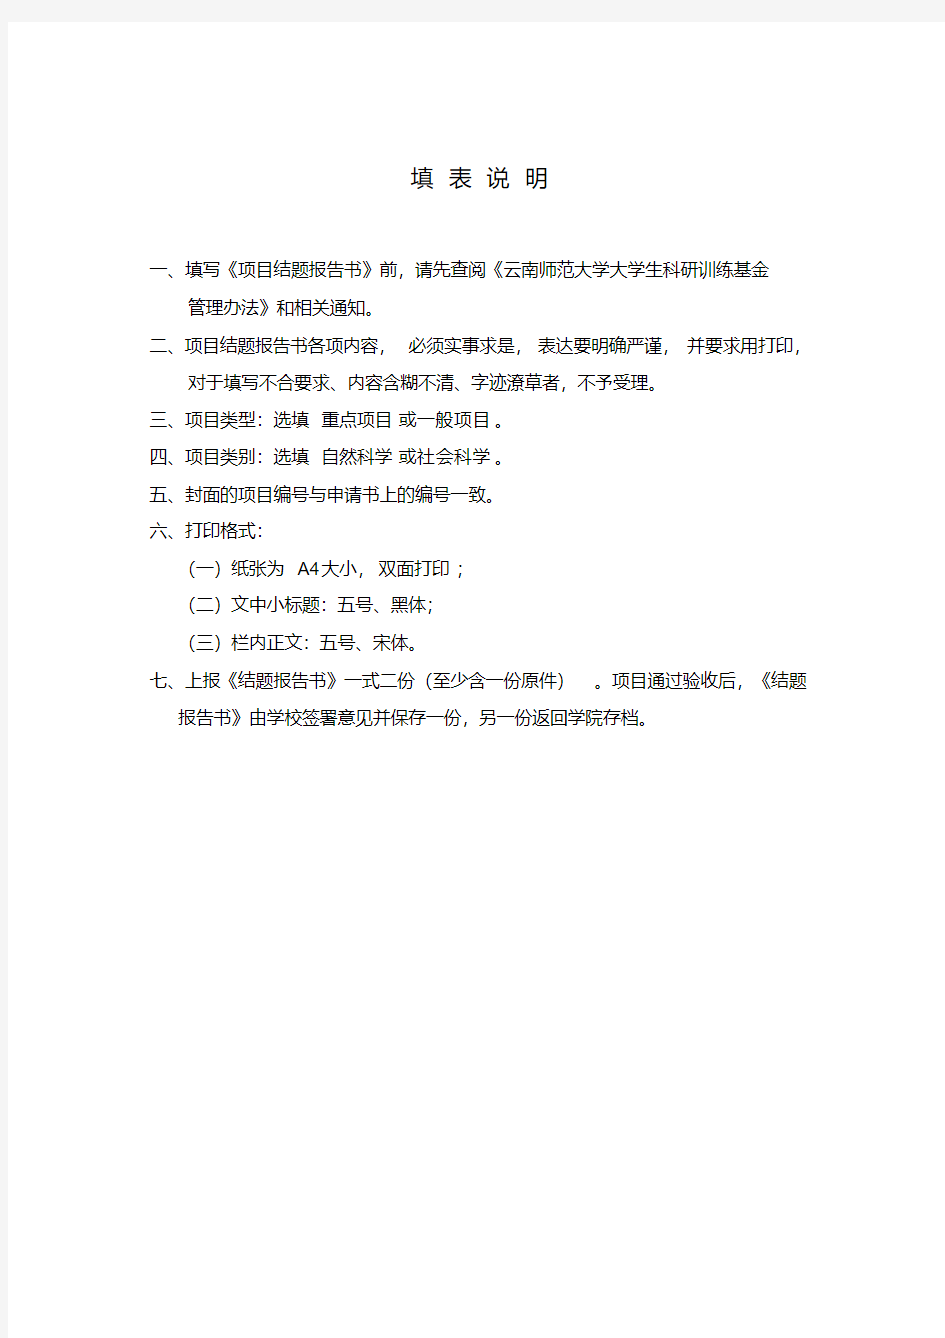 云南师范大学大学生科研训练基金项目结题报告书(同名23442)